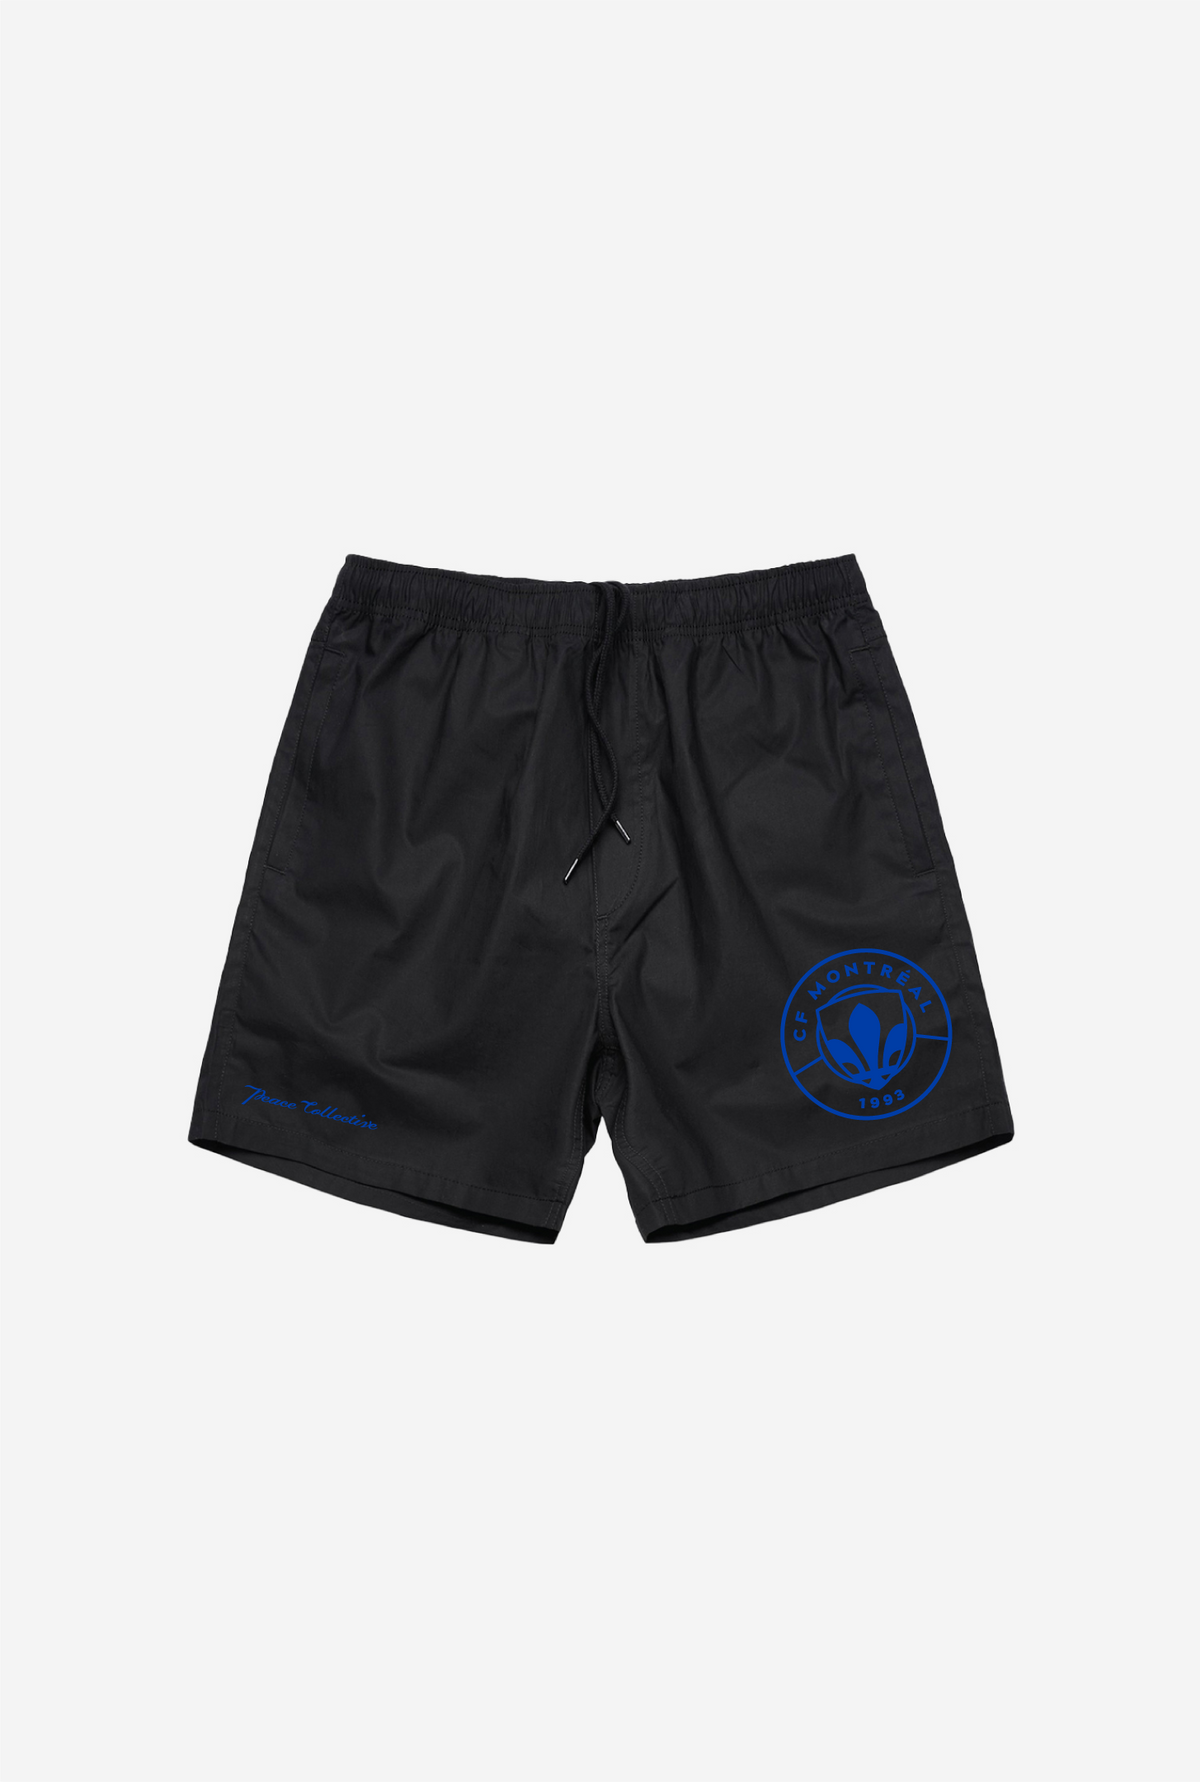 CF Montreal Board Shorts - Black